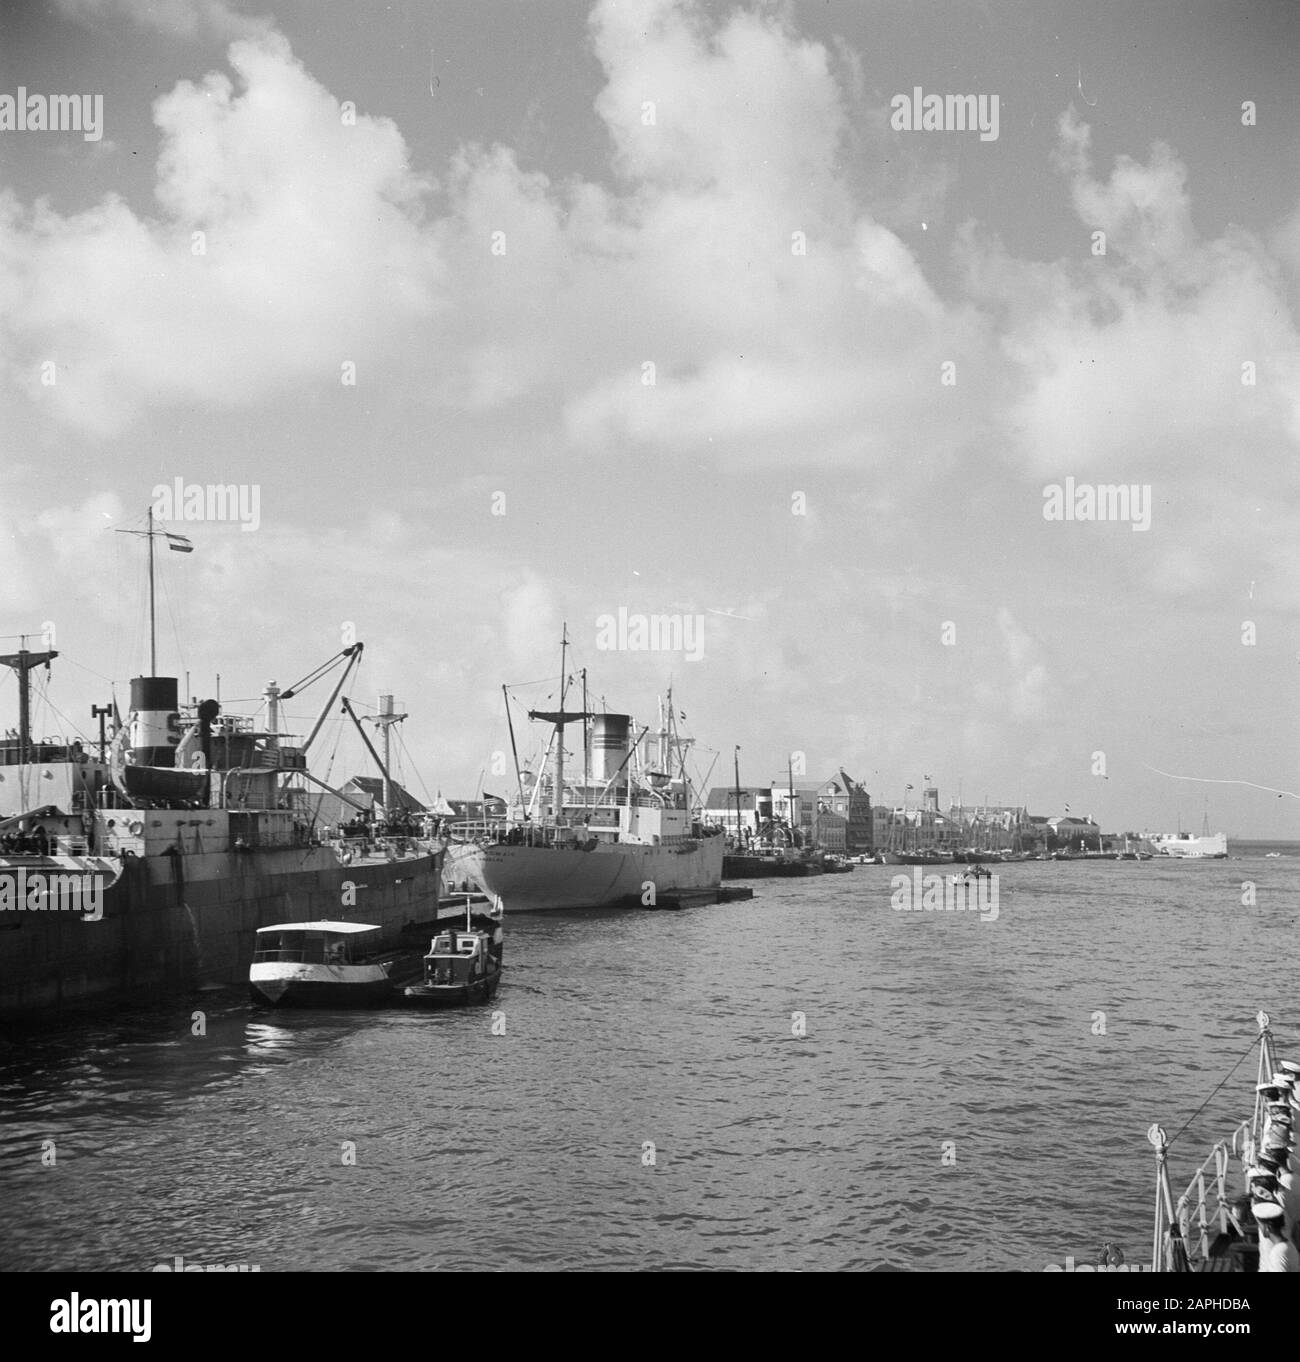 Viaggio in Suriname e Antille Olandesi Descrizione: Il porto di Willemstad il Curaçao Data: 1947 Località: Curaçao, Willemstad Parole Chiave: Porti, navi Foto Stock